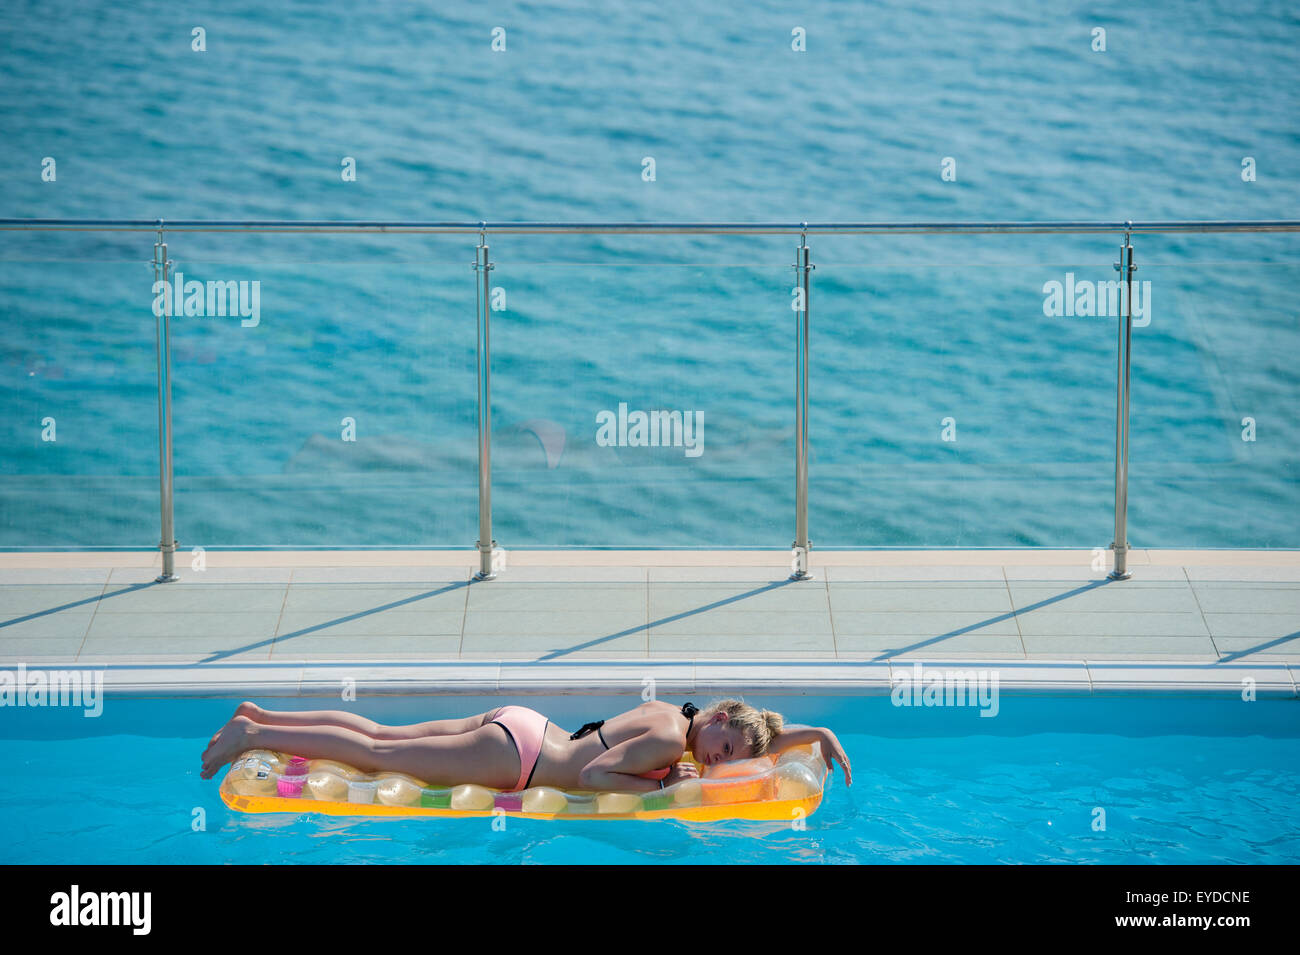 Una hermosa rubia descansa sobre una colchoneta inflable en una piscina con el azul del mar directamente detrás de ella Foto de stock